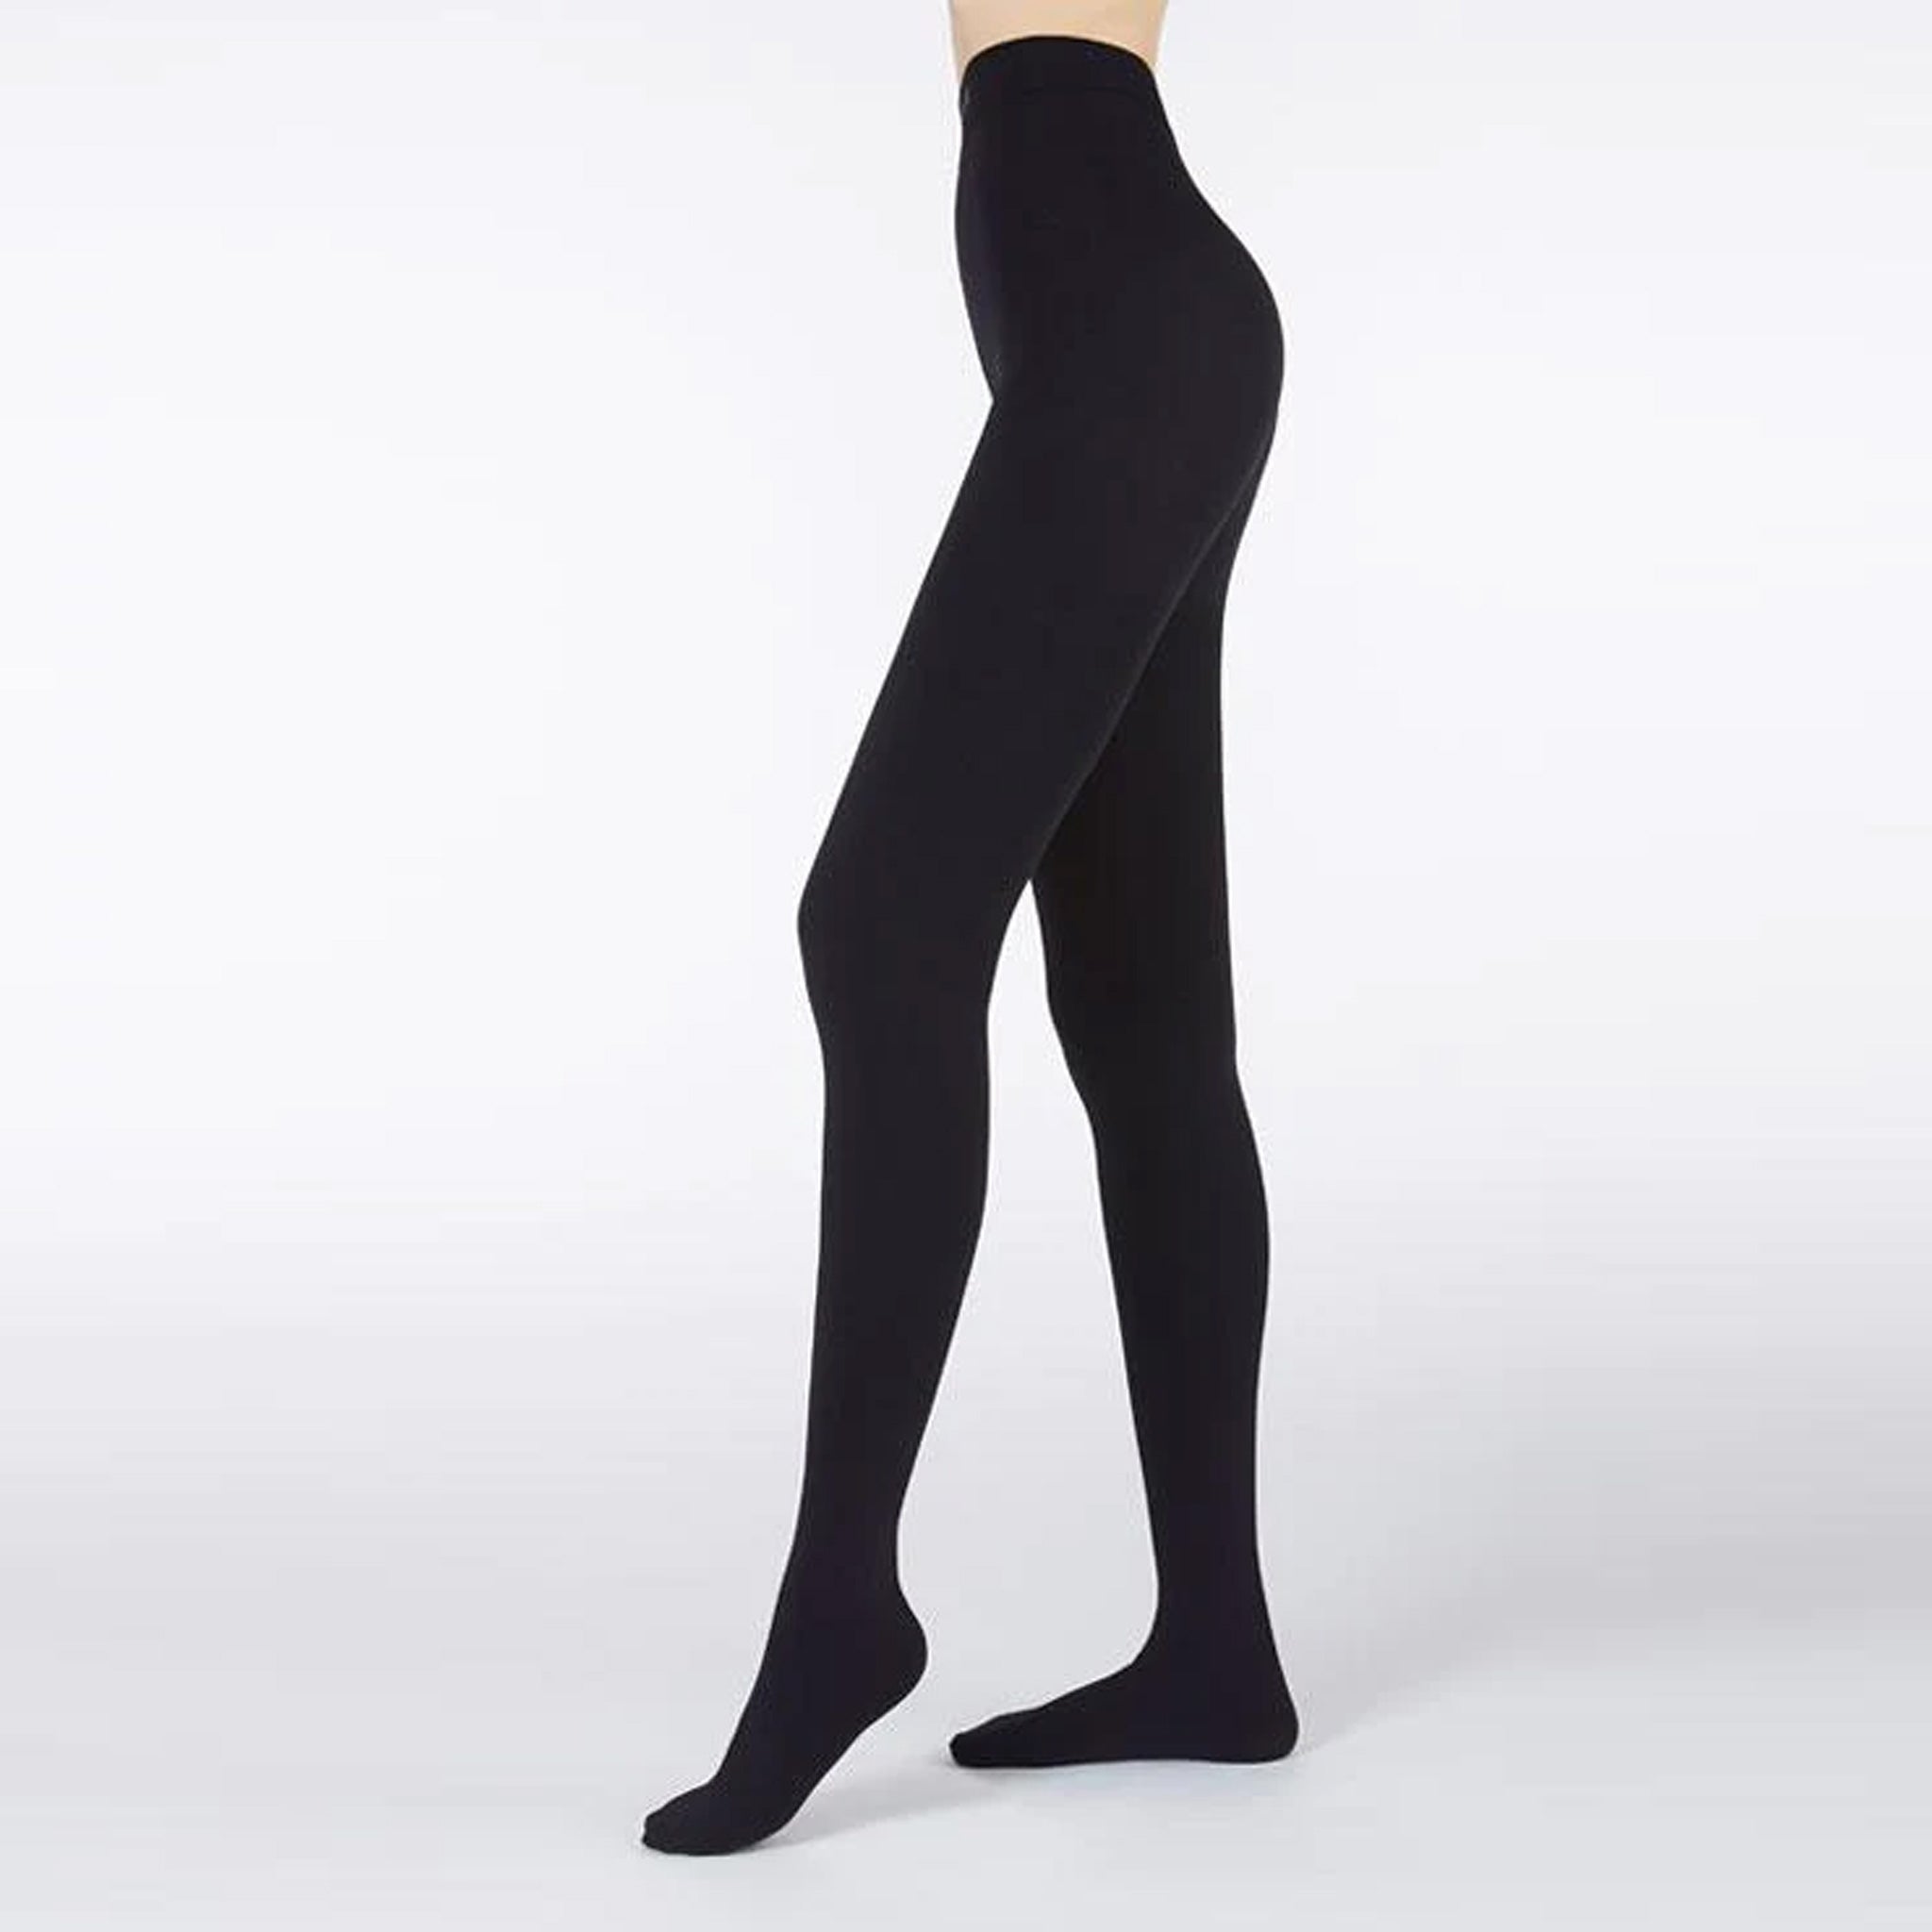 1pc Women's Fleece Lined Leggings Winter Warmth Tight Pants